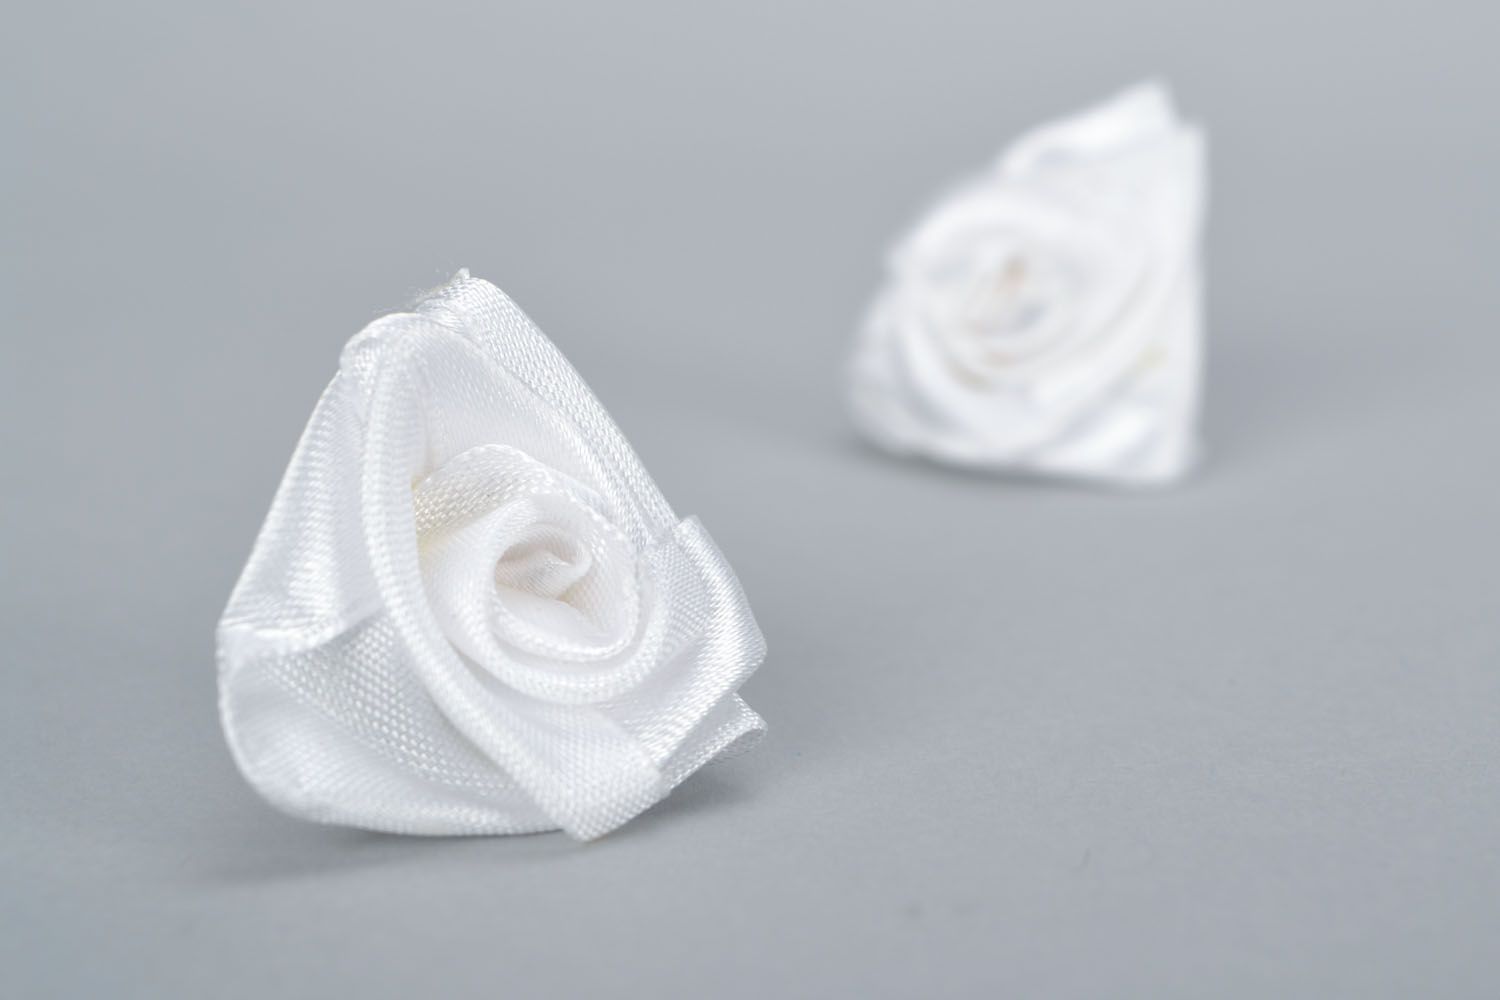 Homemade stud earrings White roses photo 3